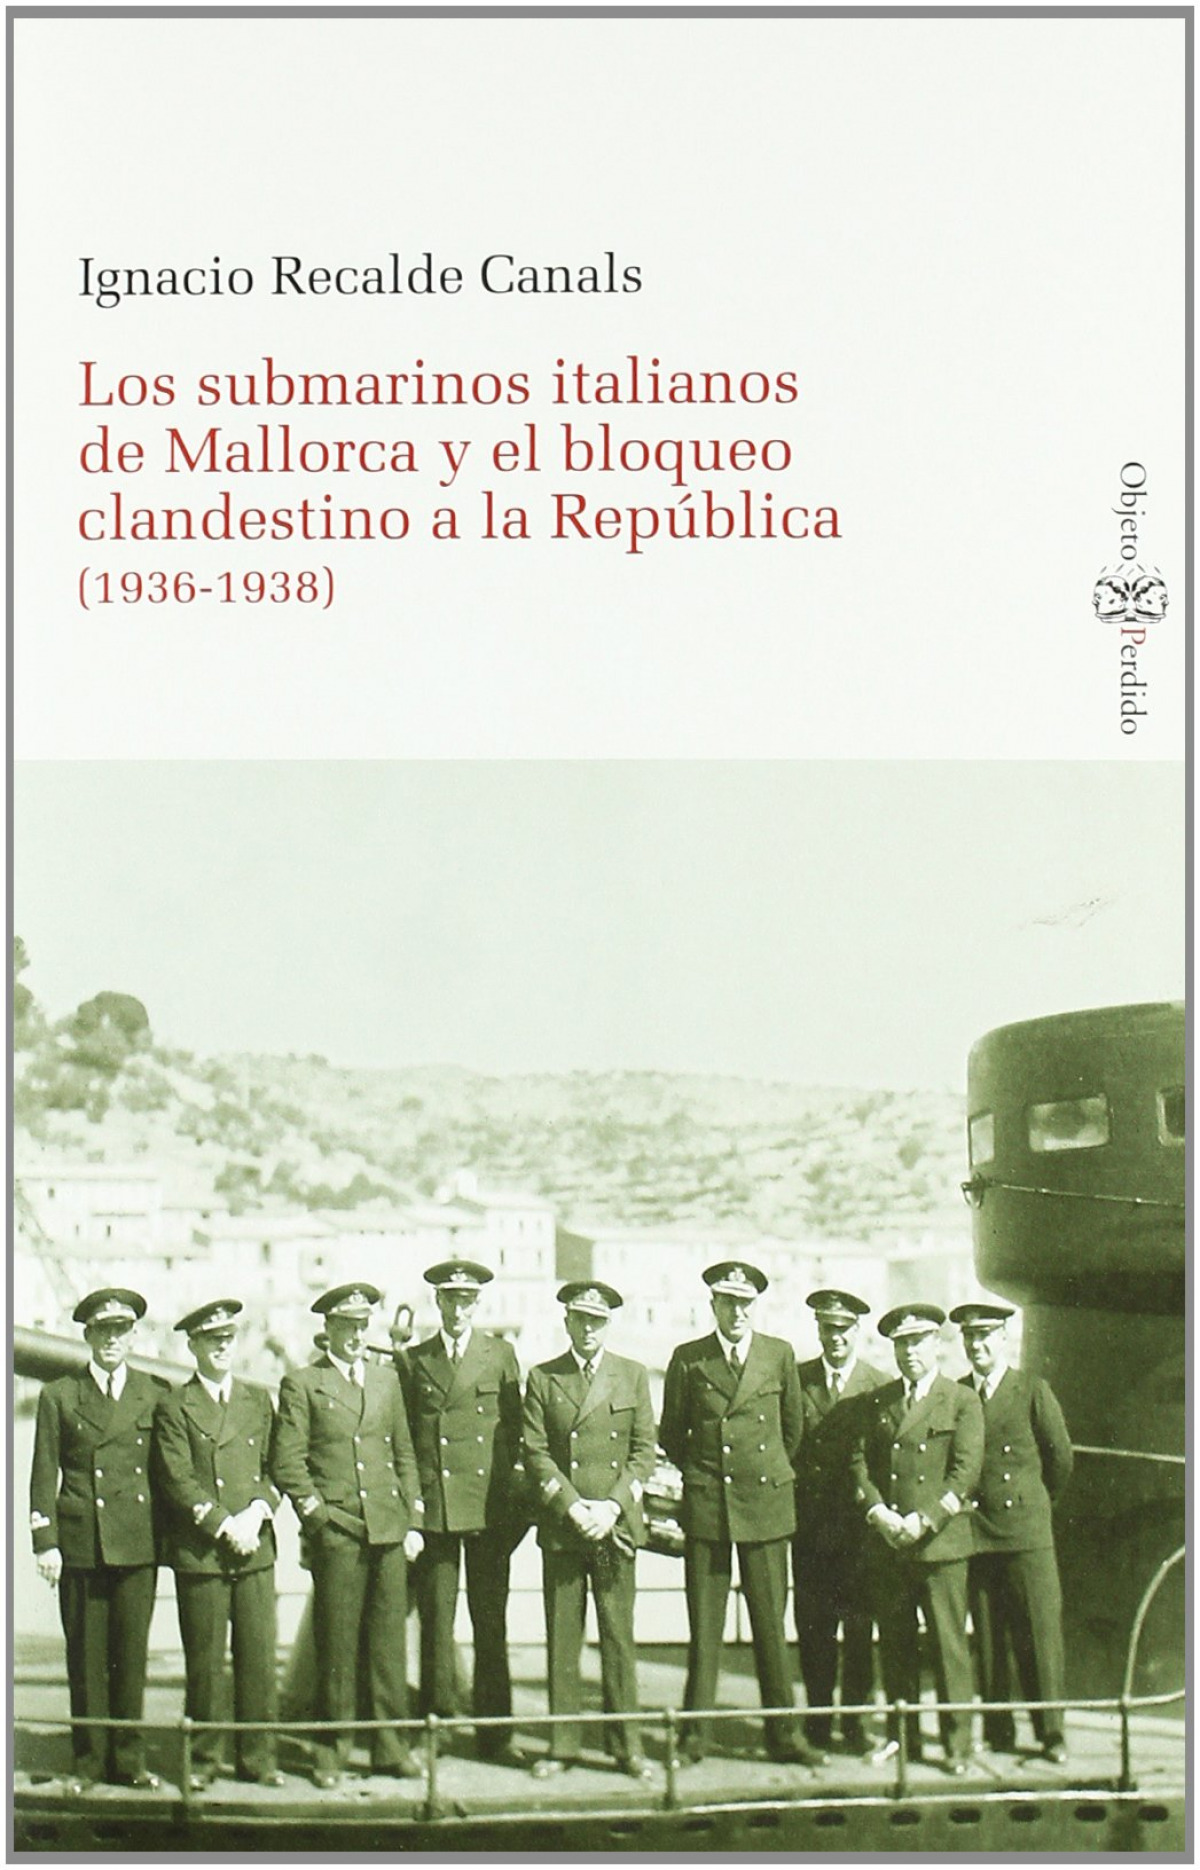 Submarinos italianos de mallorca y el bloqueo clandestino - Ignacio Recalde